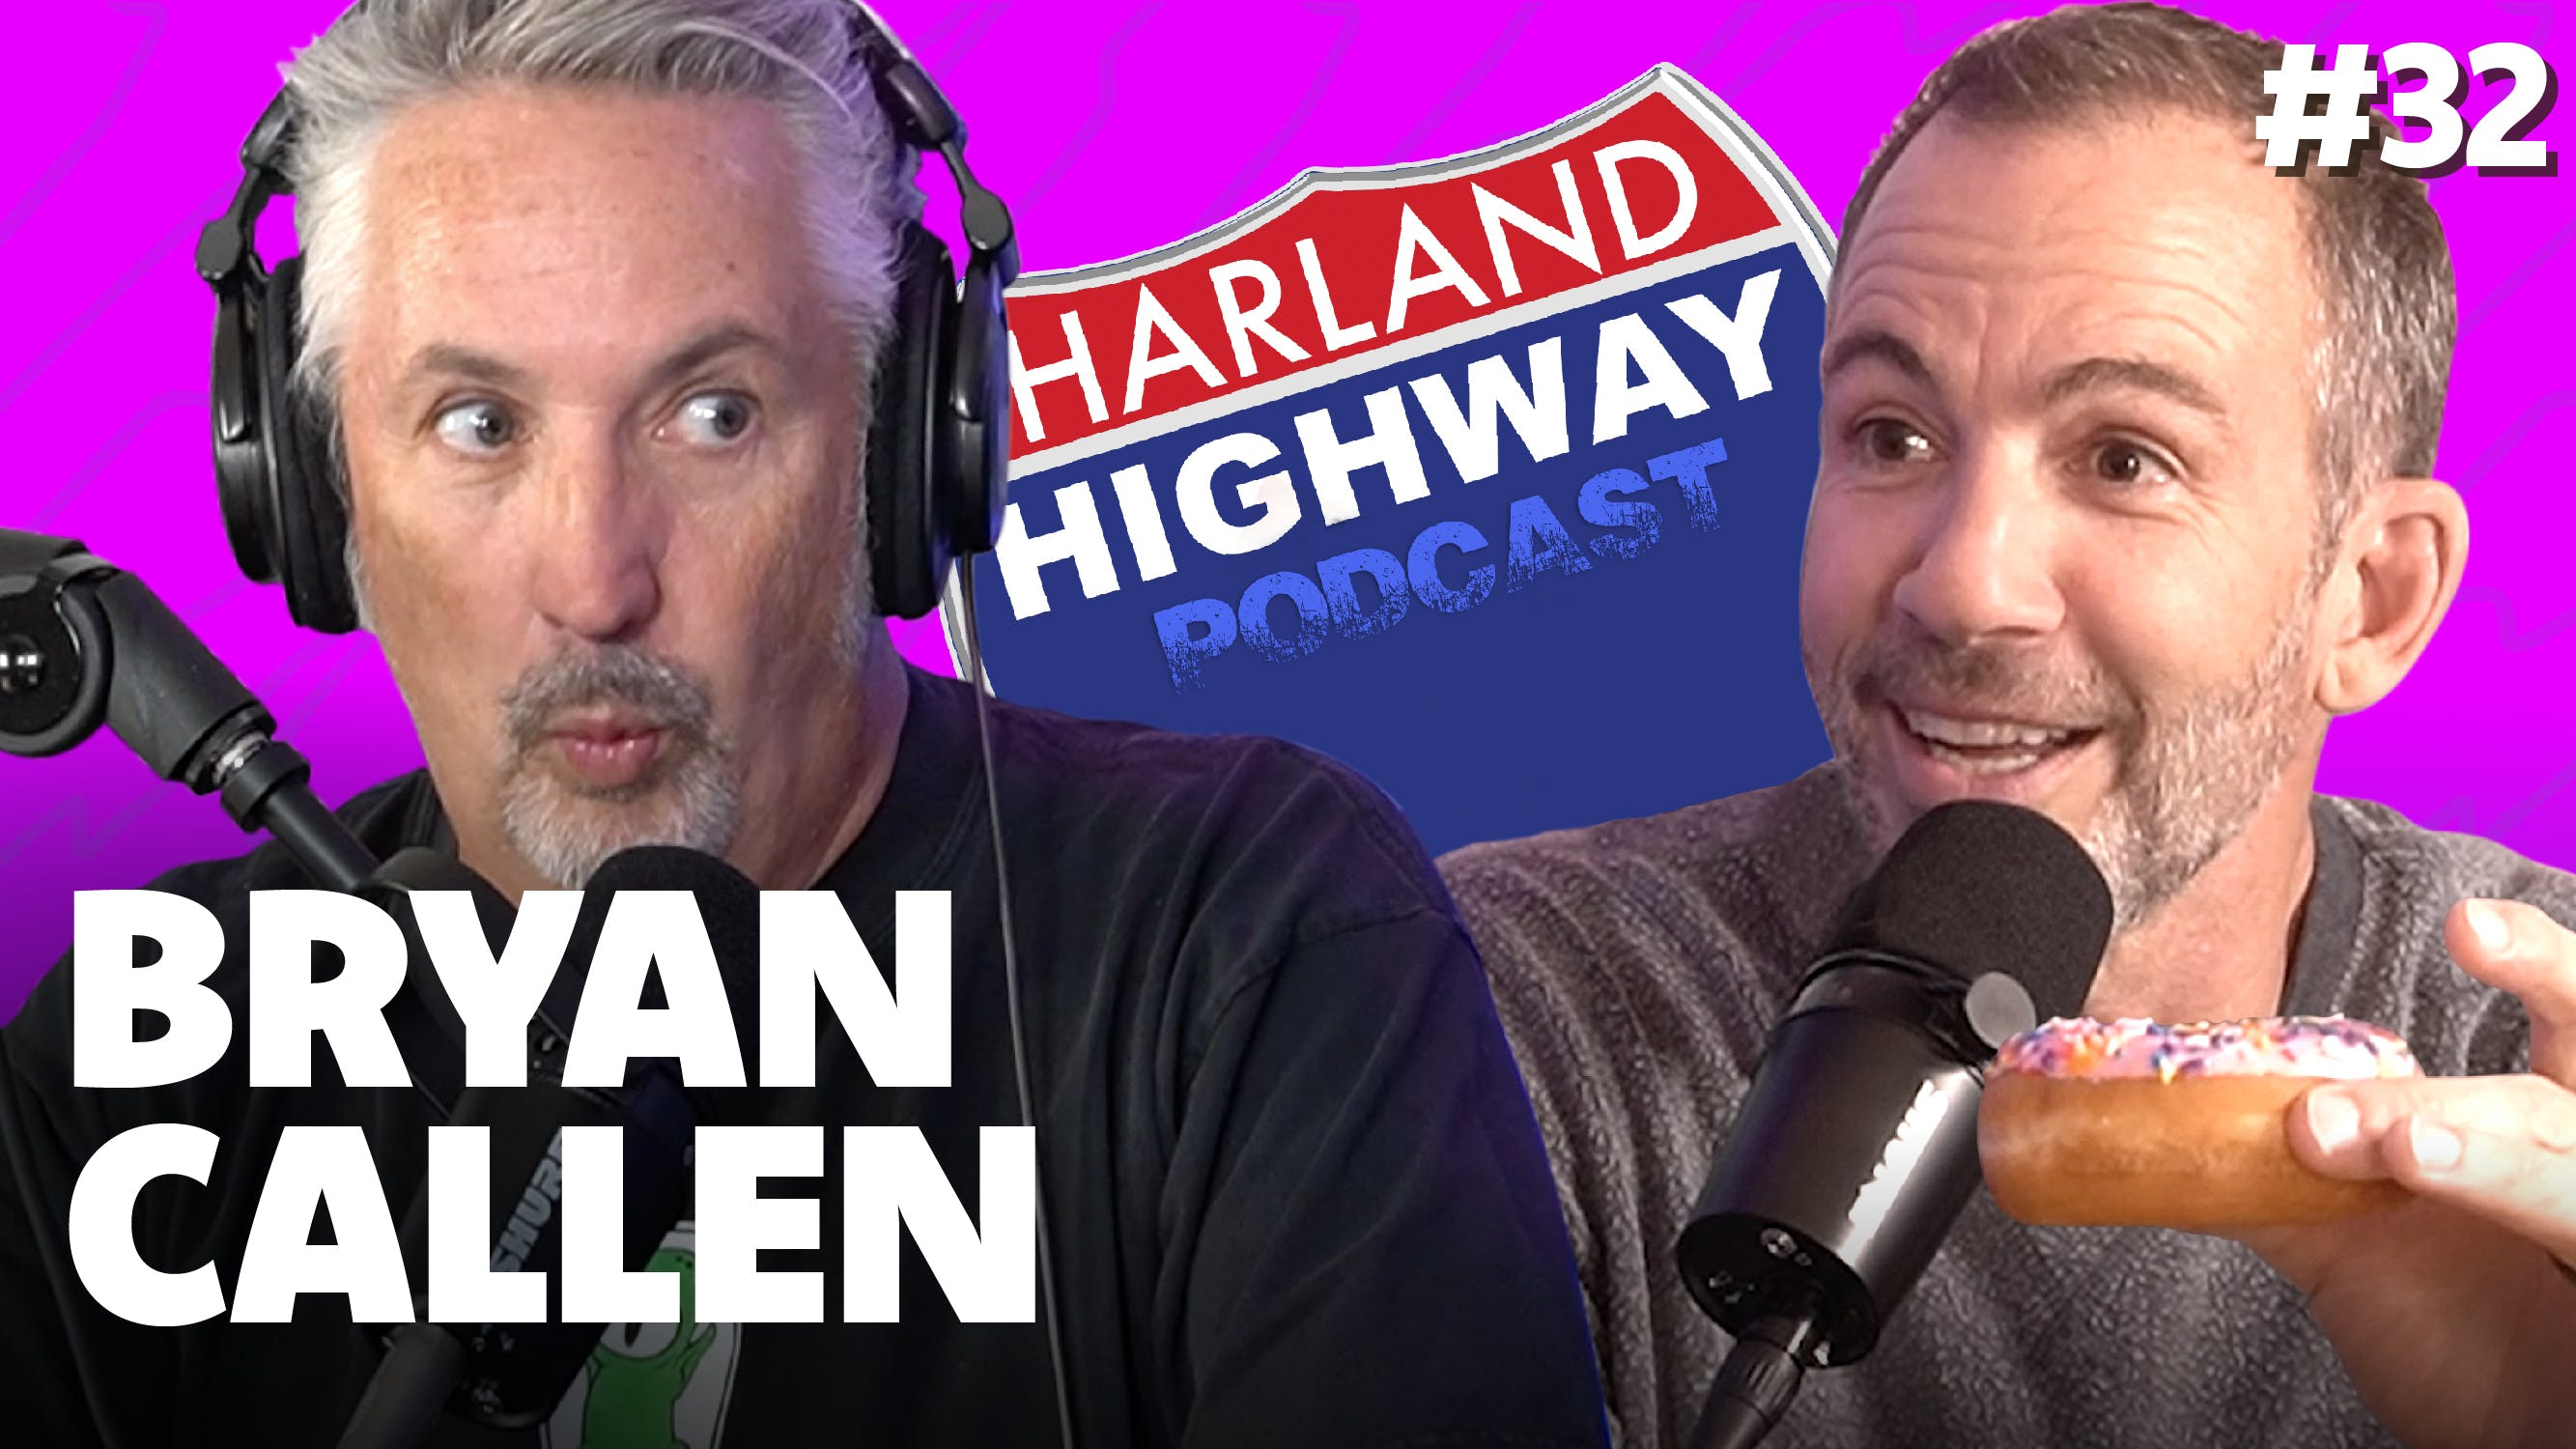 NEW HARLAND HIGHWAY #32 -BRYAN CALLEN, Comedian, Actor, Podcaster